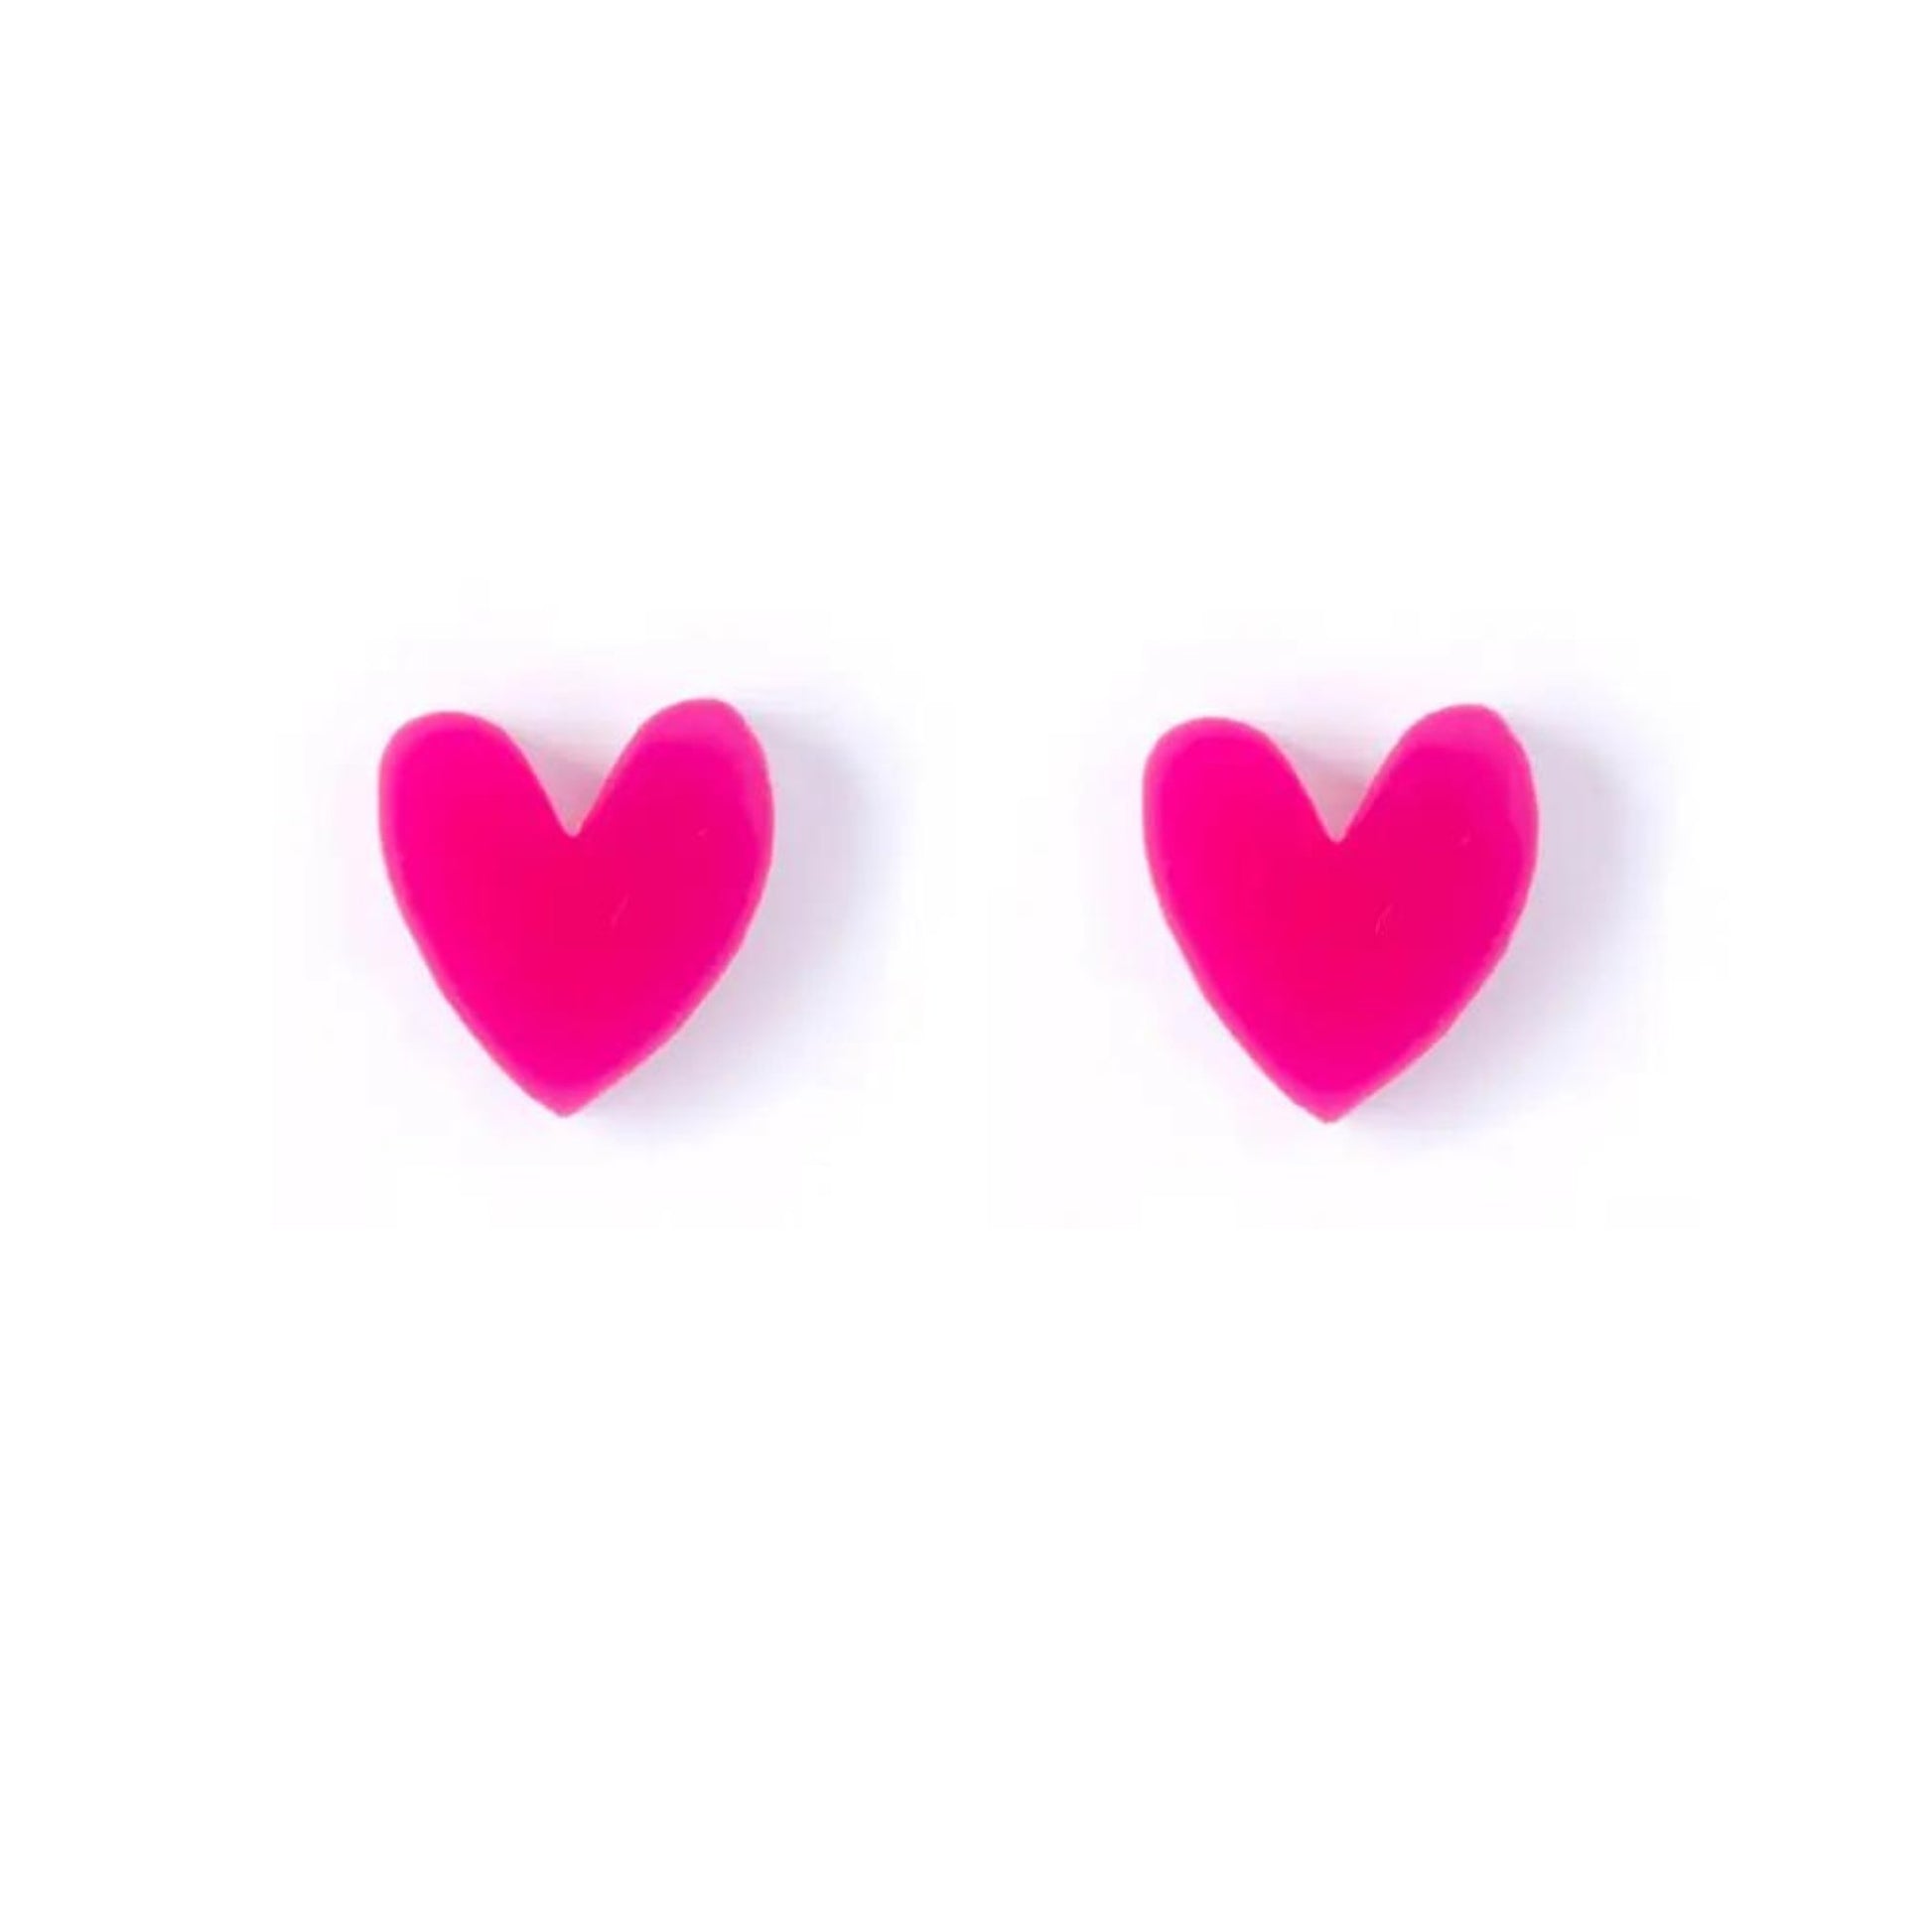 Heart Stud Earrings - Fuchsia - The Little Jewellery Company